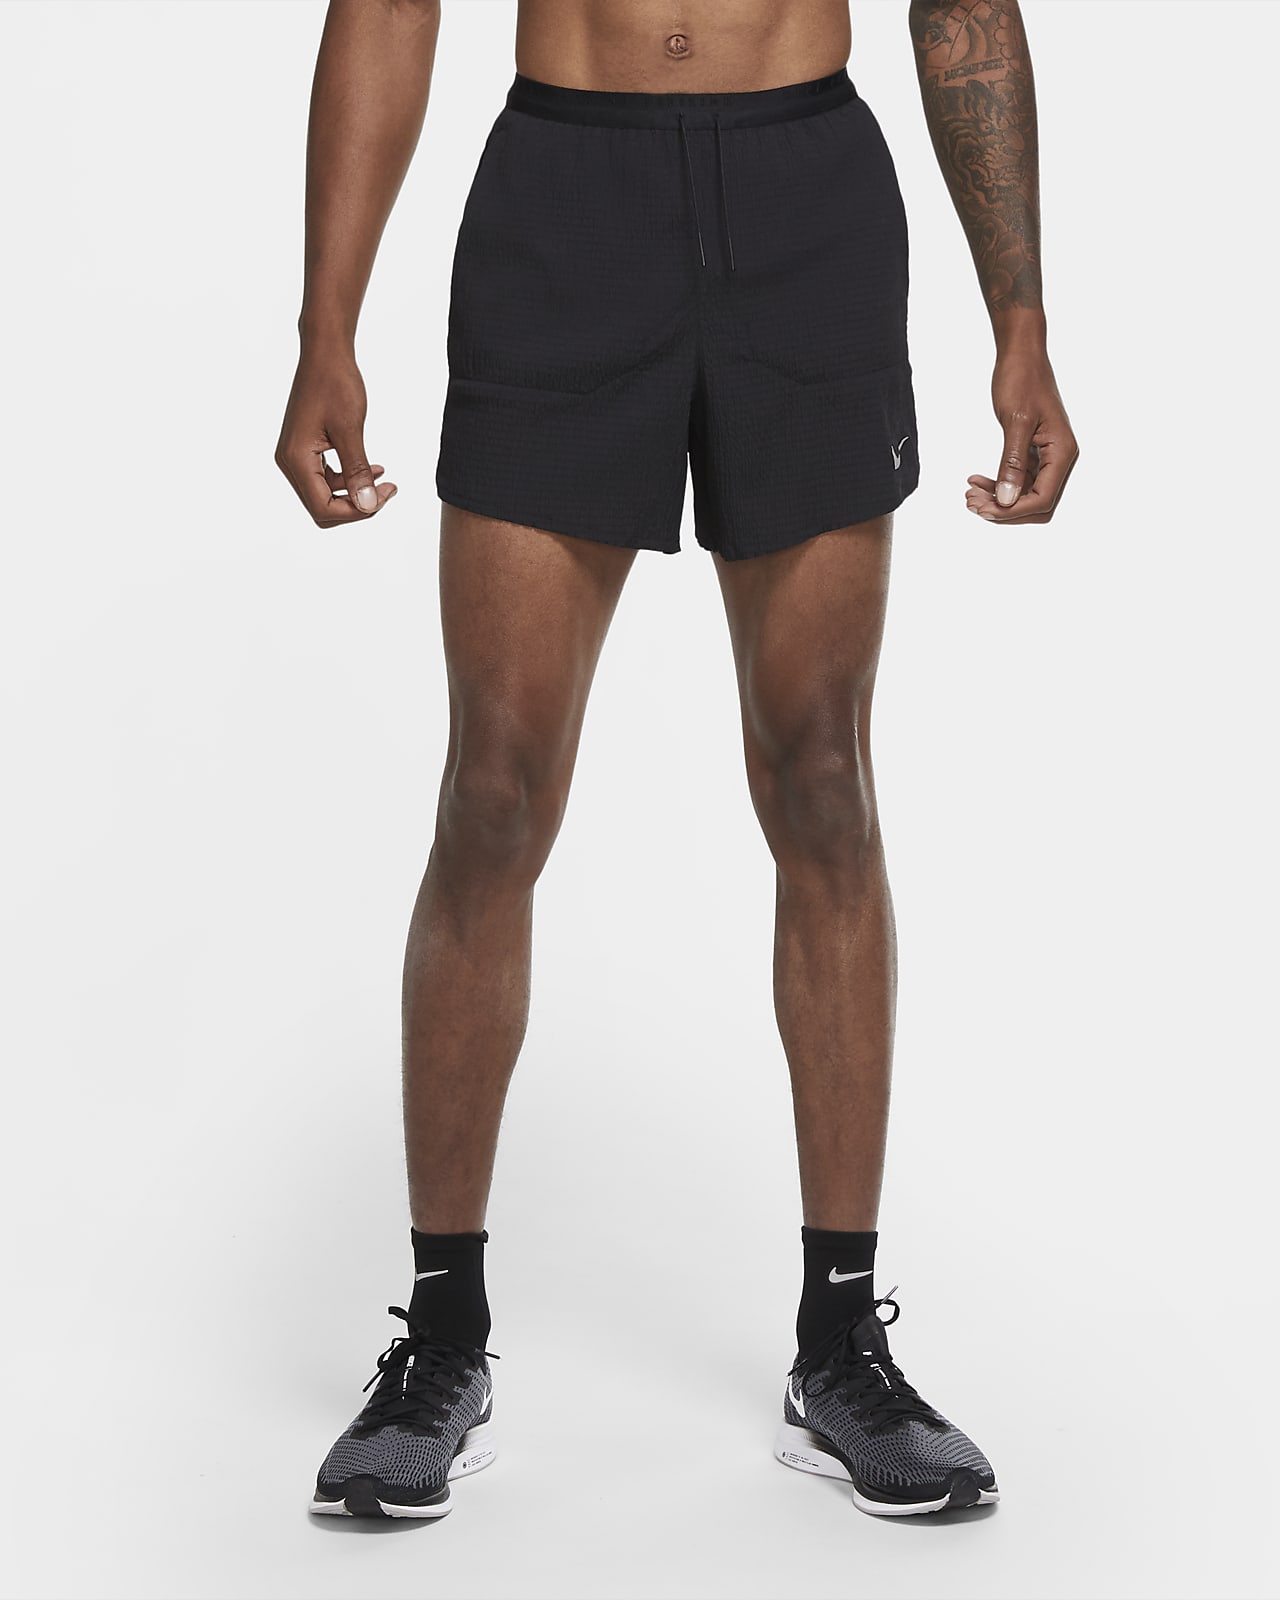 nike running division shorts